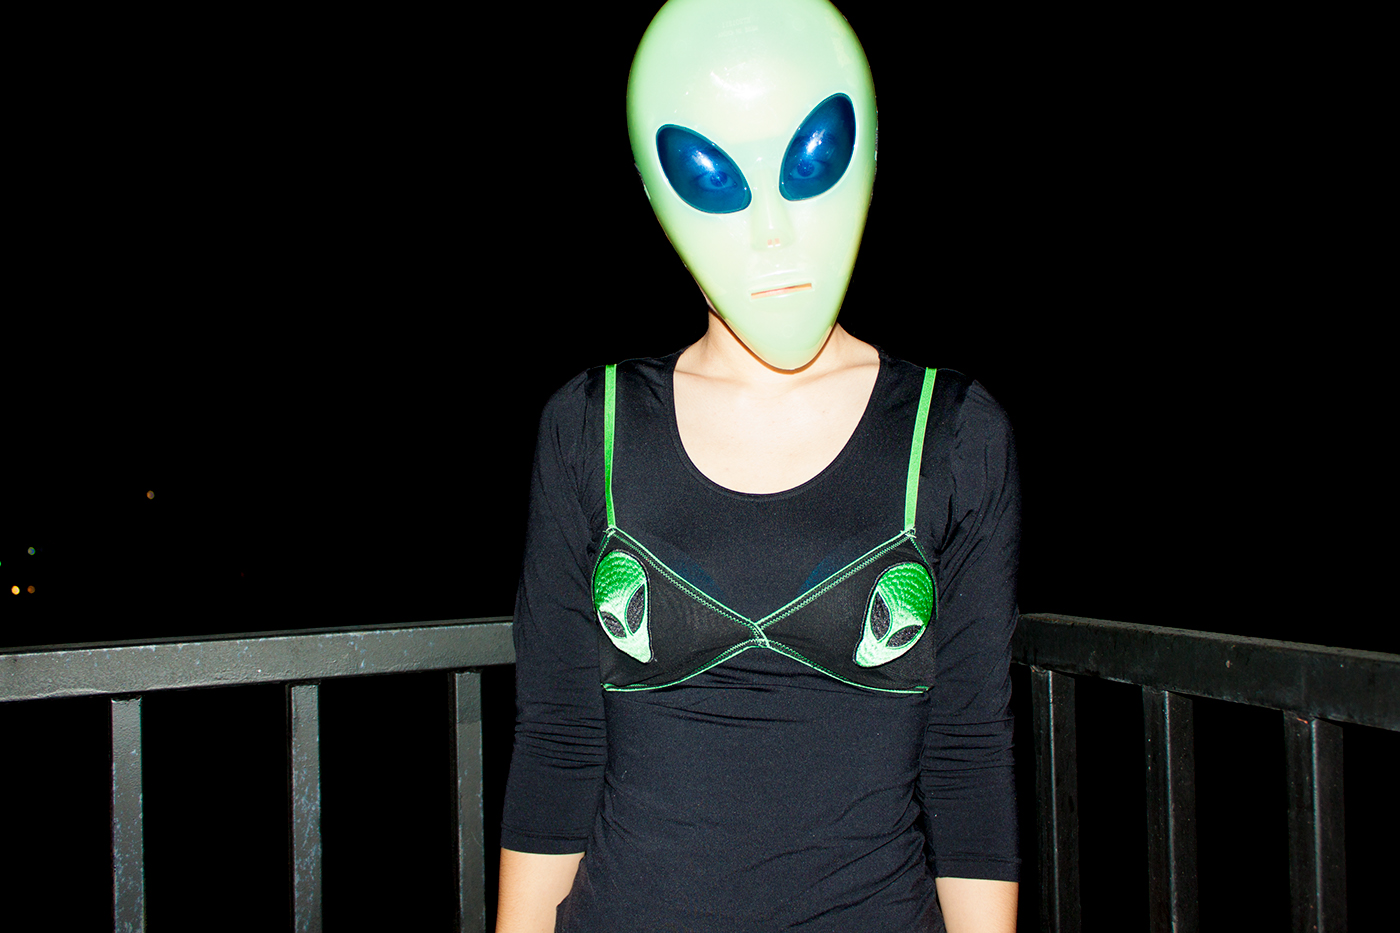 alien Alien mask alien bra Legal Alien alien in america illegal alien alienation green alien lawful alien unlawful alien